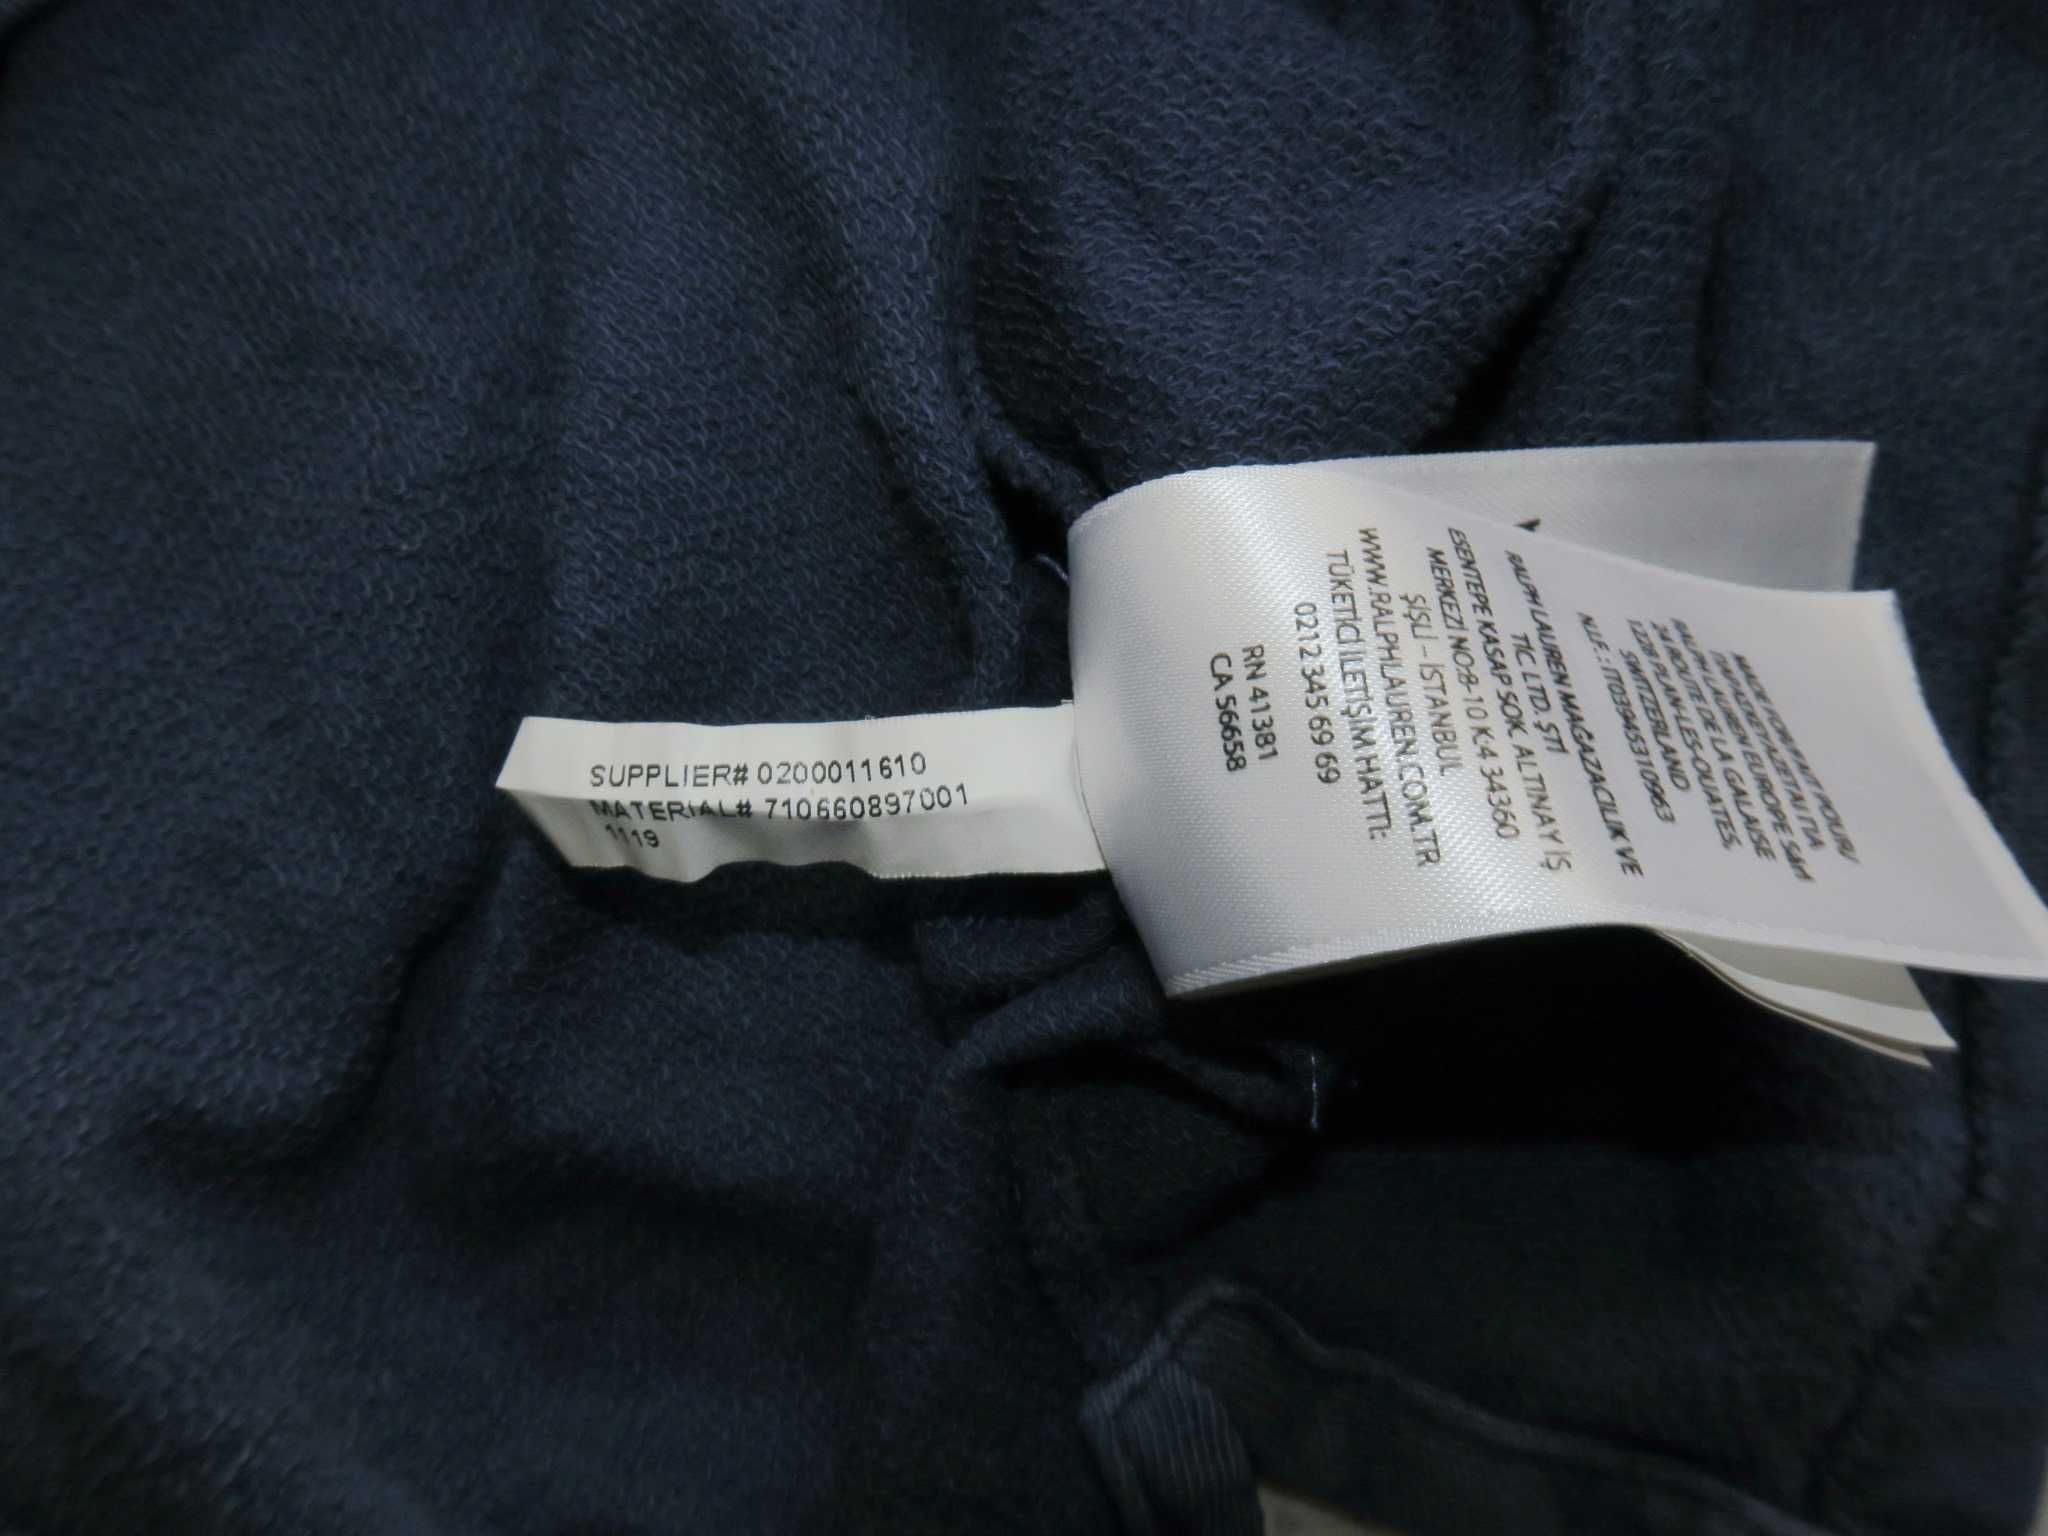 Ralph Lauren koszulka polo washed nowe kolekcje XLTG